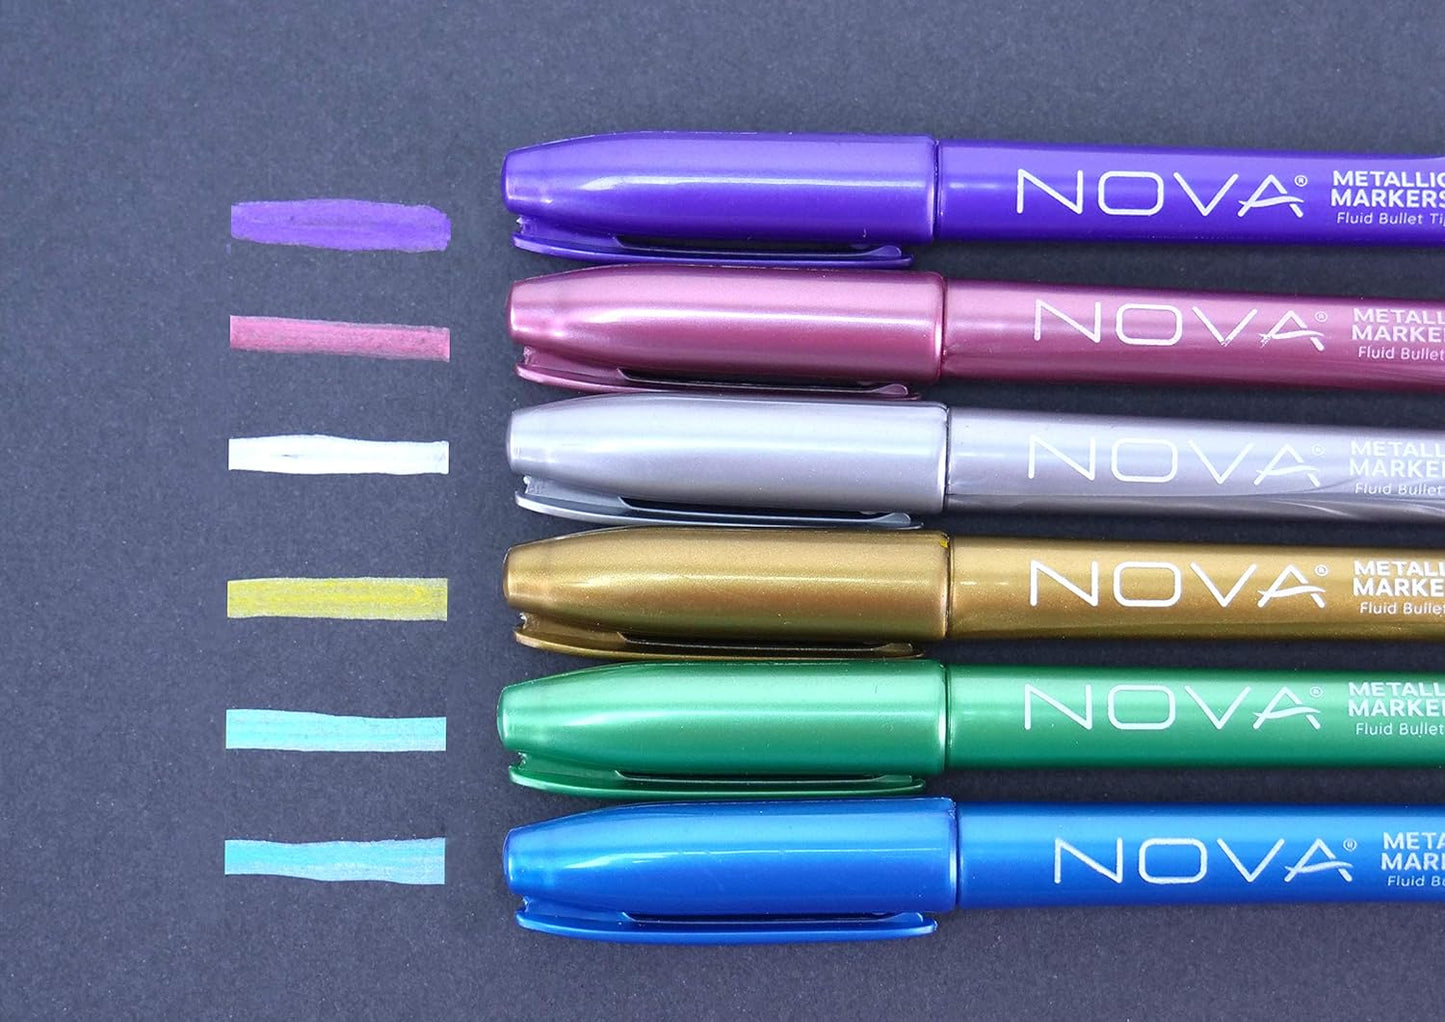 Set de rotuladores metálicos Nova 6 pcs Metallic Markers